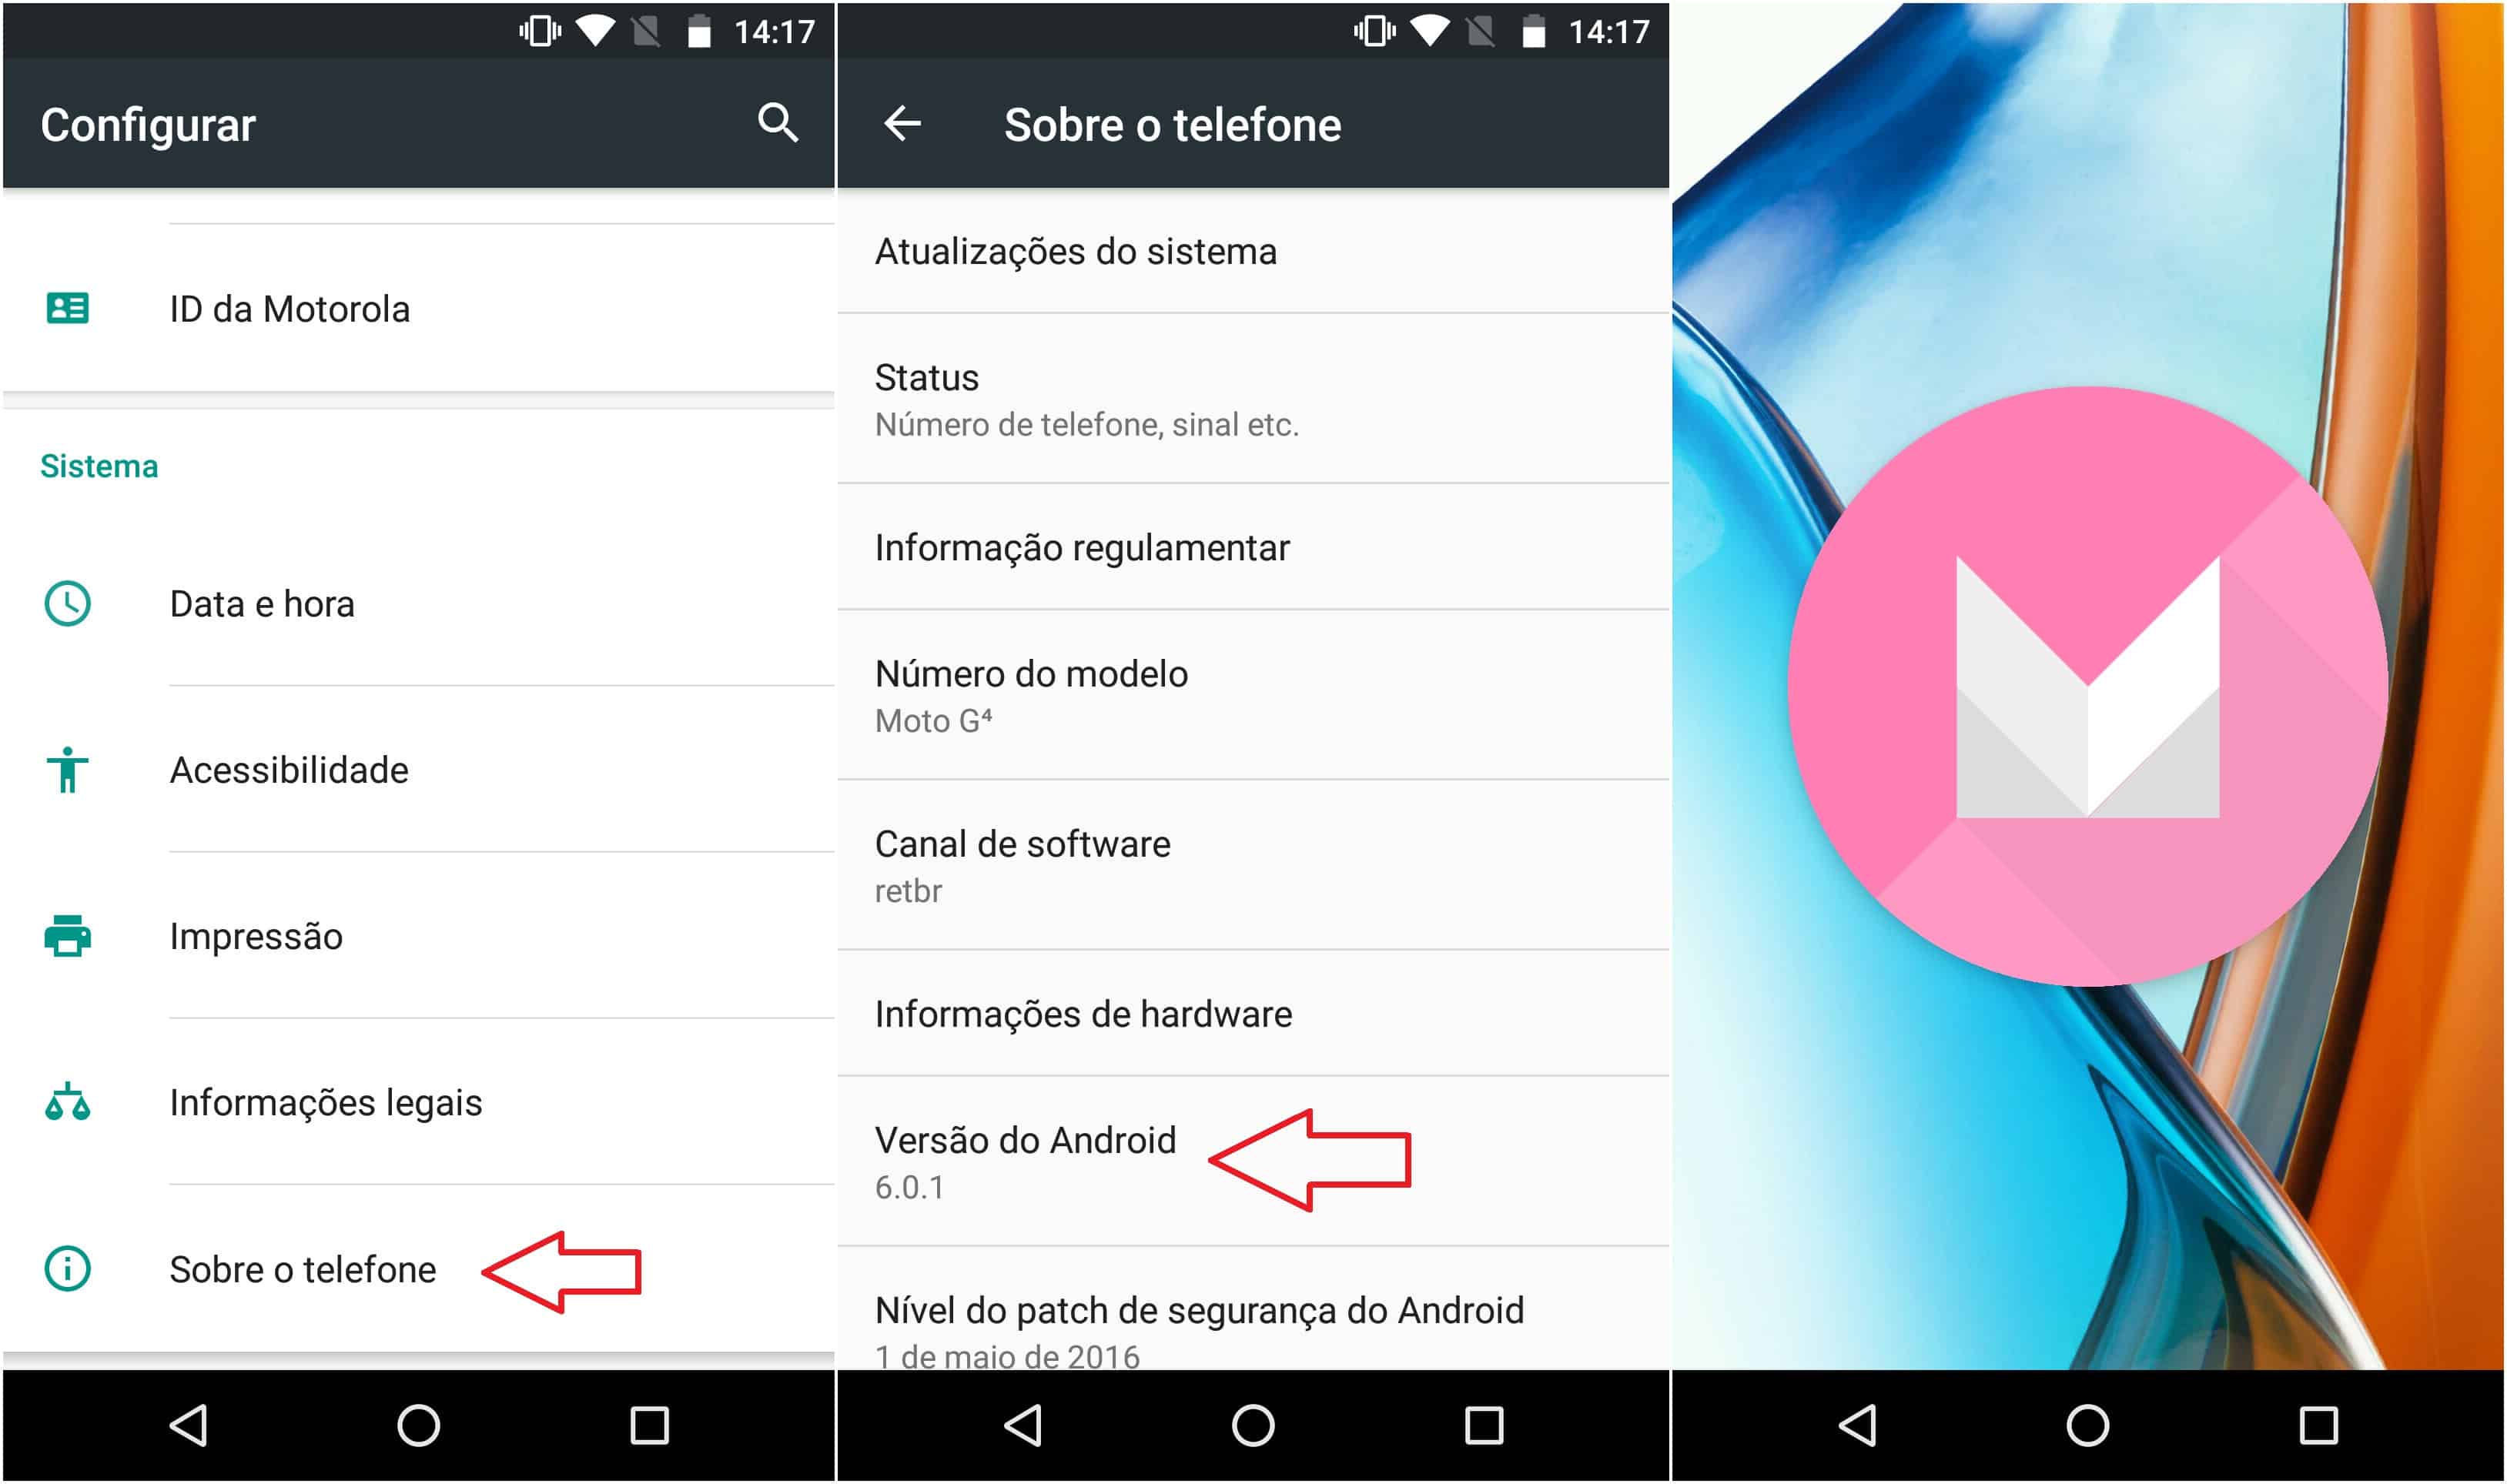 Saiba como acessar o jogo secreto escondido no Android - Olhar Digital